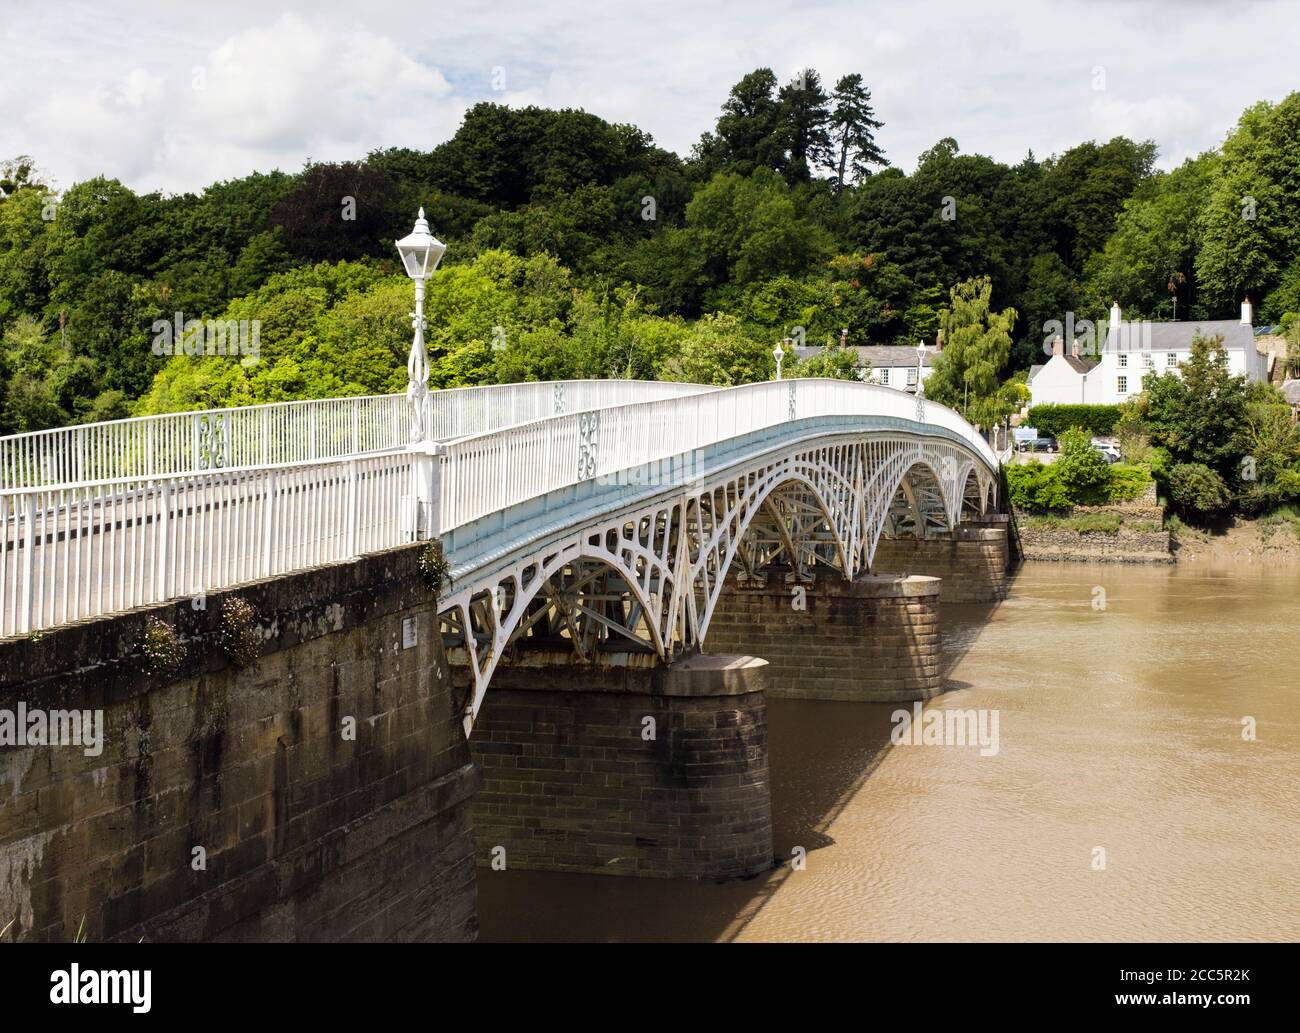 Old Wye Bridge (1816) è un ponte ad arco di ferro che attraversa il fiume Wye al confine tra Inghilterra e Galles. Chepstow, Monmouthshire, Galles, Regno Unito Foto Stock